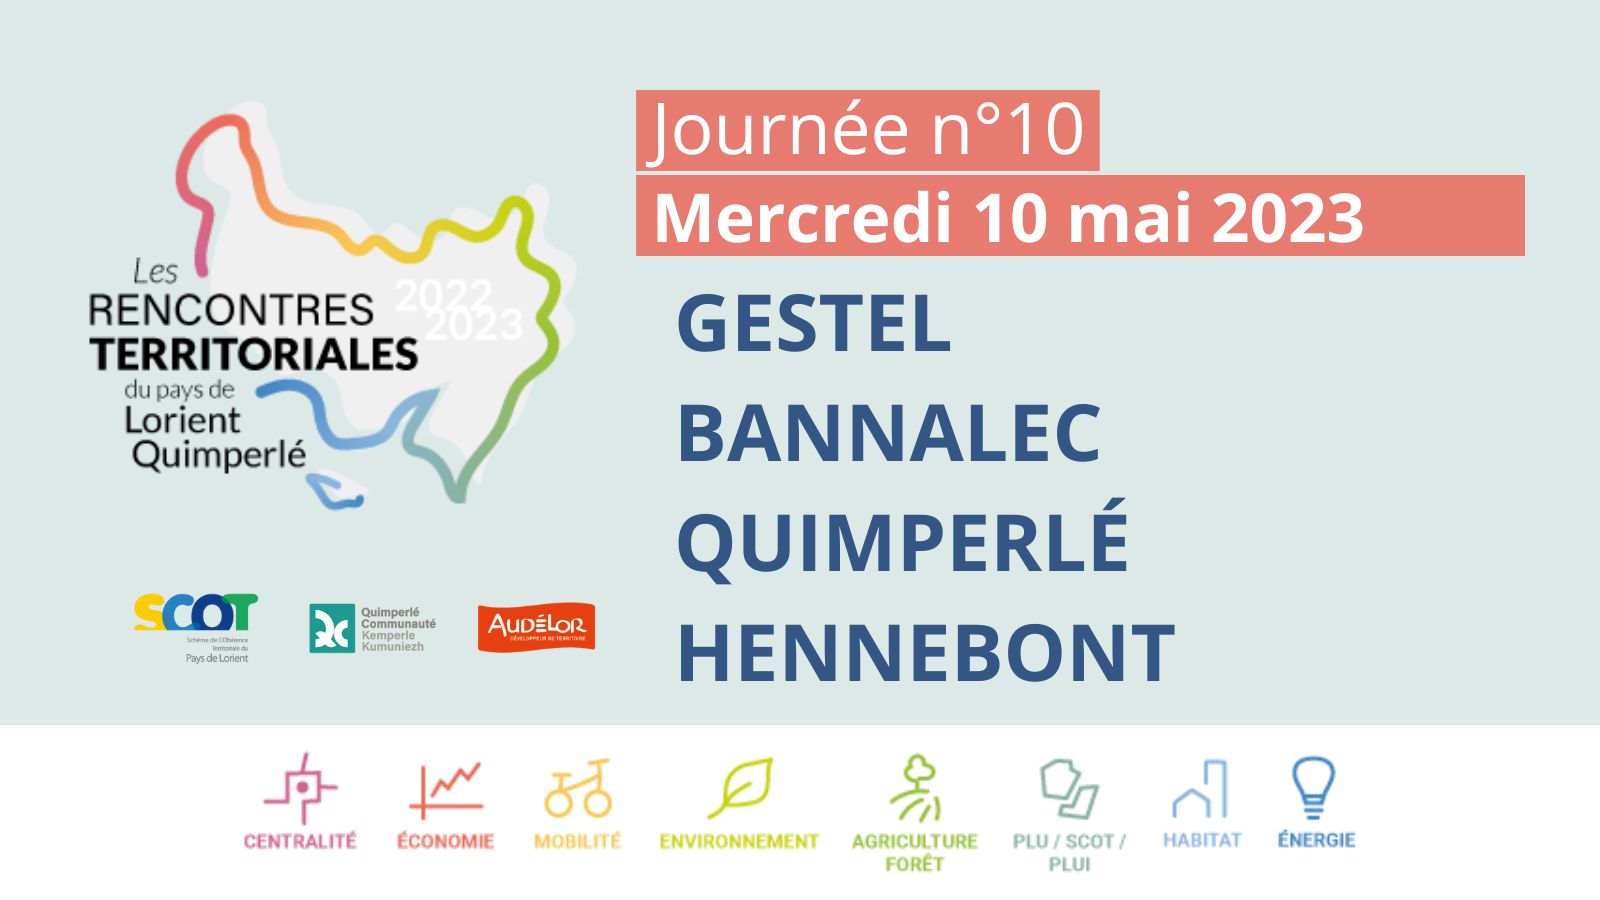 Rencontre territoriale du pays de Lorient-Quimperlé n°10 - Gestel, Bannalec, Quimperlé, Hennebont